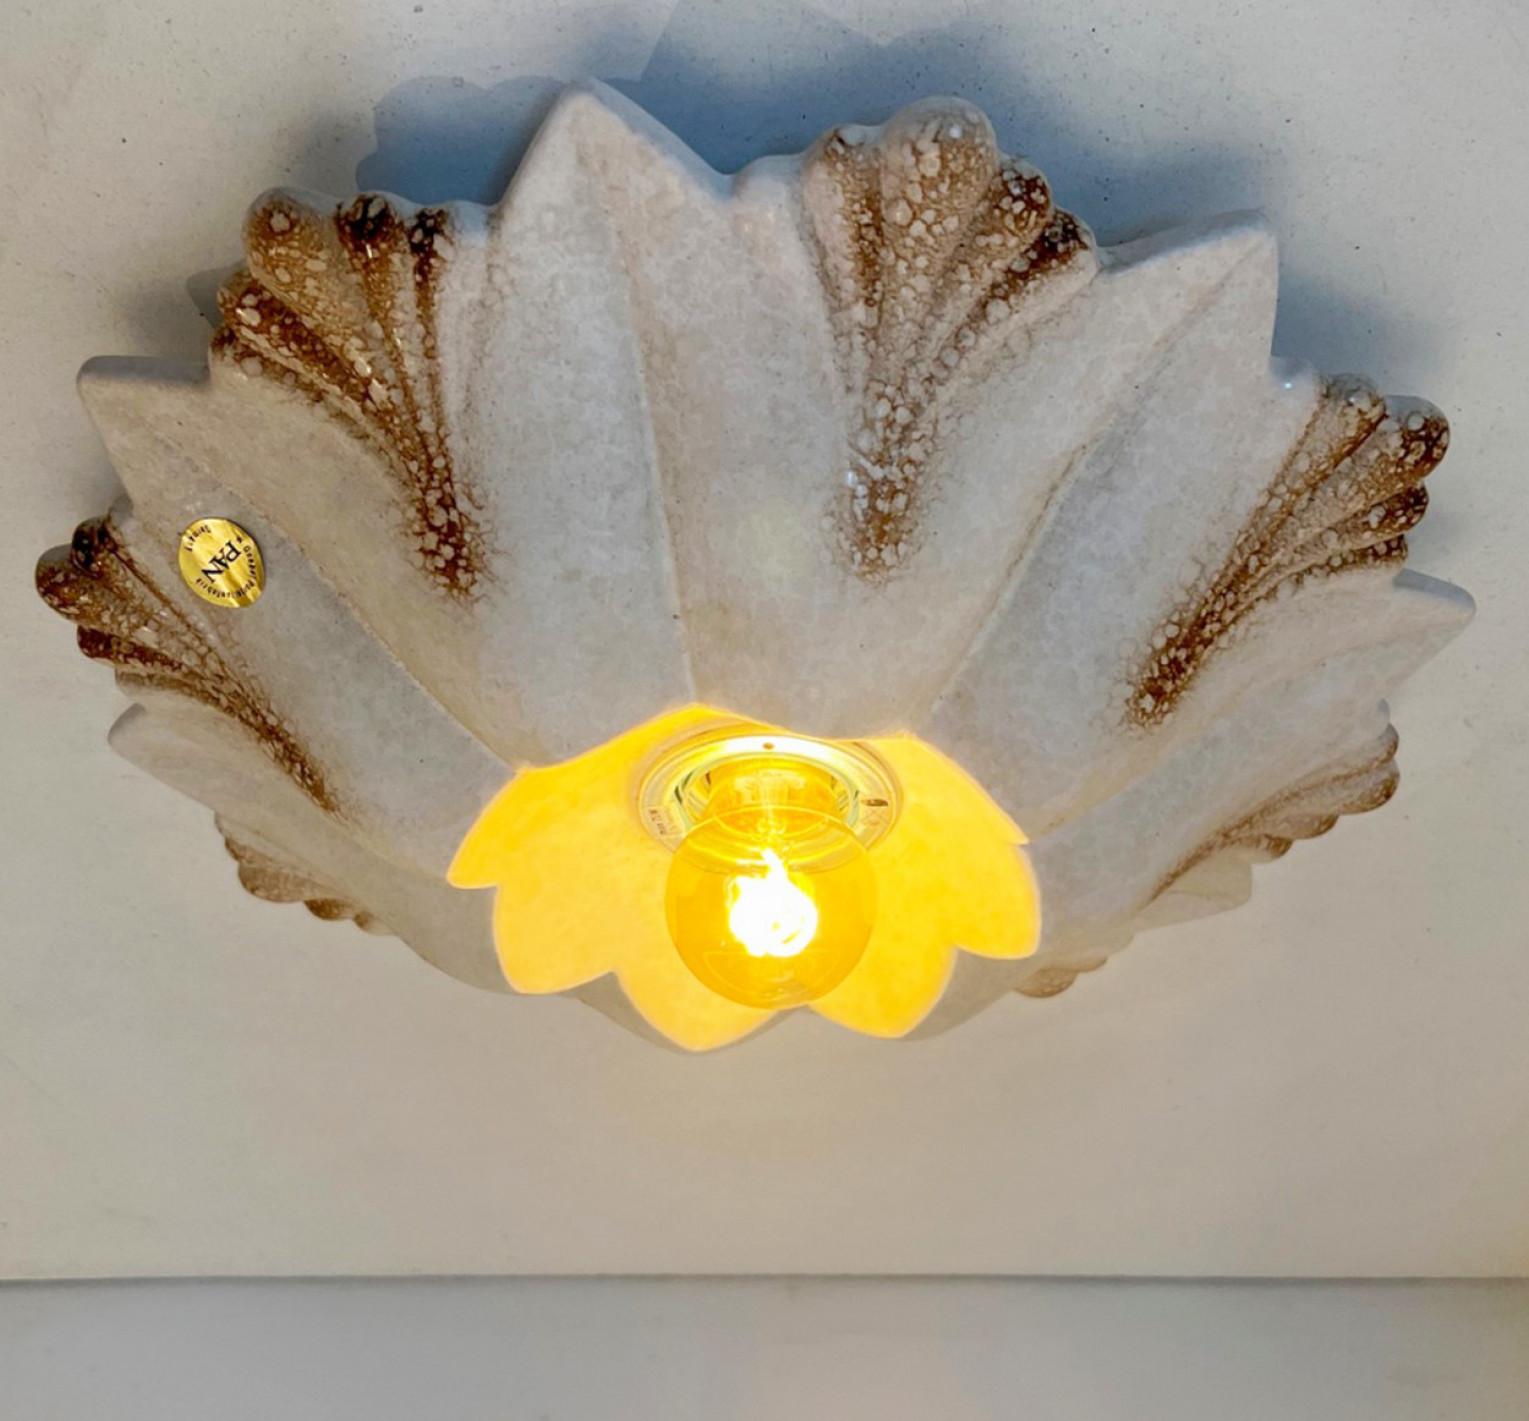 Blumenförmige Wandleuchte aus Keramik in weißem Sand im Stil von Fat Lava. Hergestellt von Hustadt Leuchten Keramik, Deutschland, in den 1970er Jahren.

Die Art der Glasur wird 